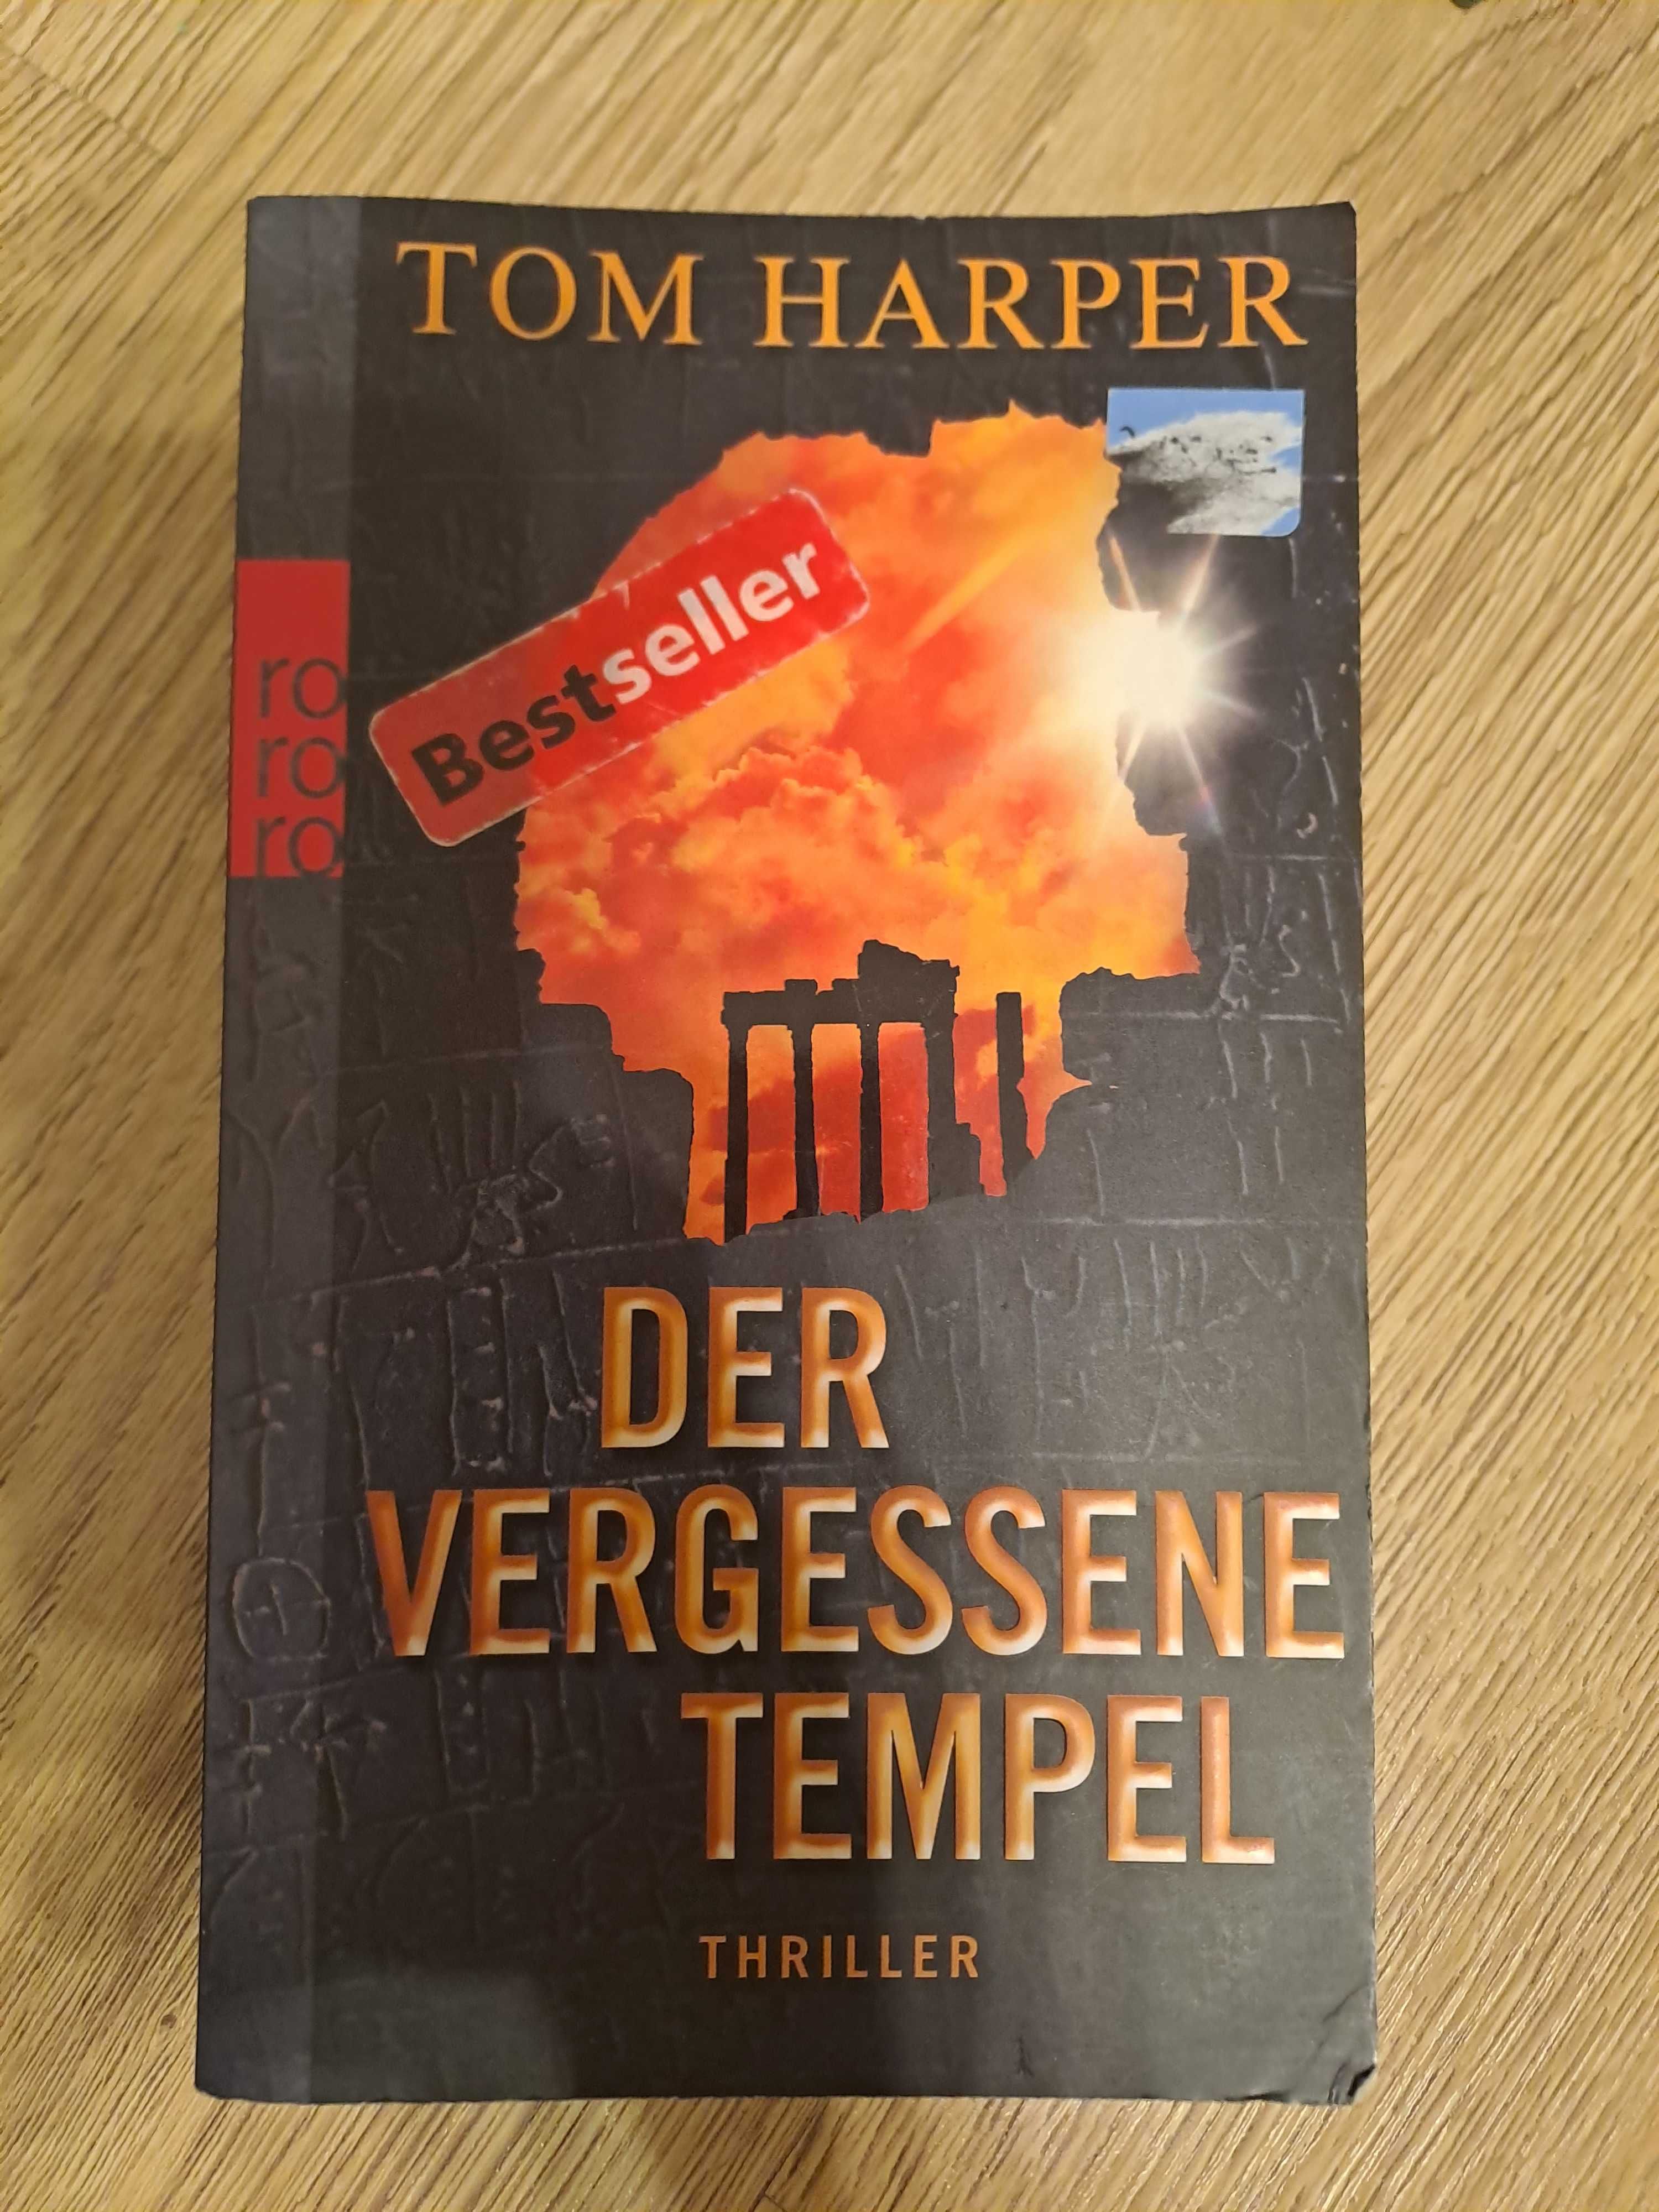 książka "Der Vergessene tempel" po niemiecku